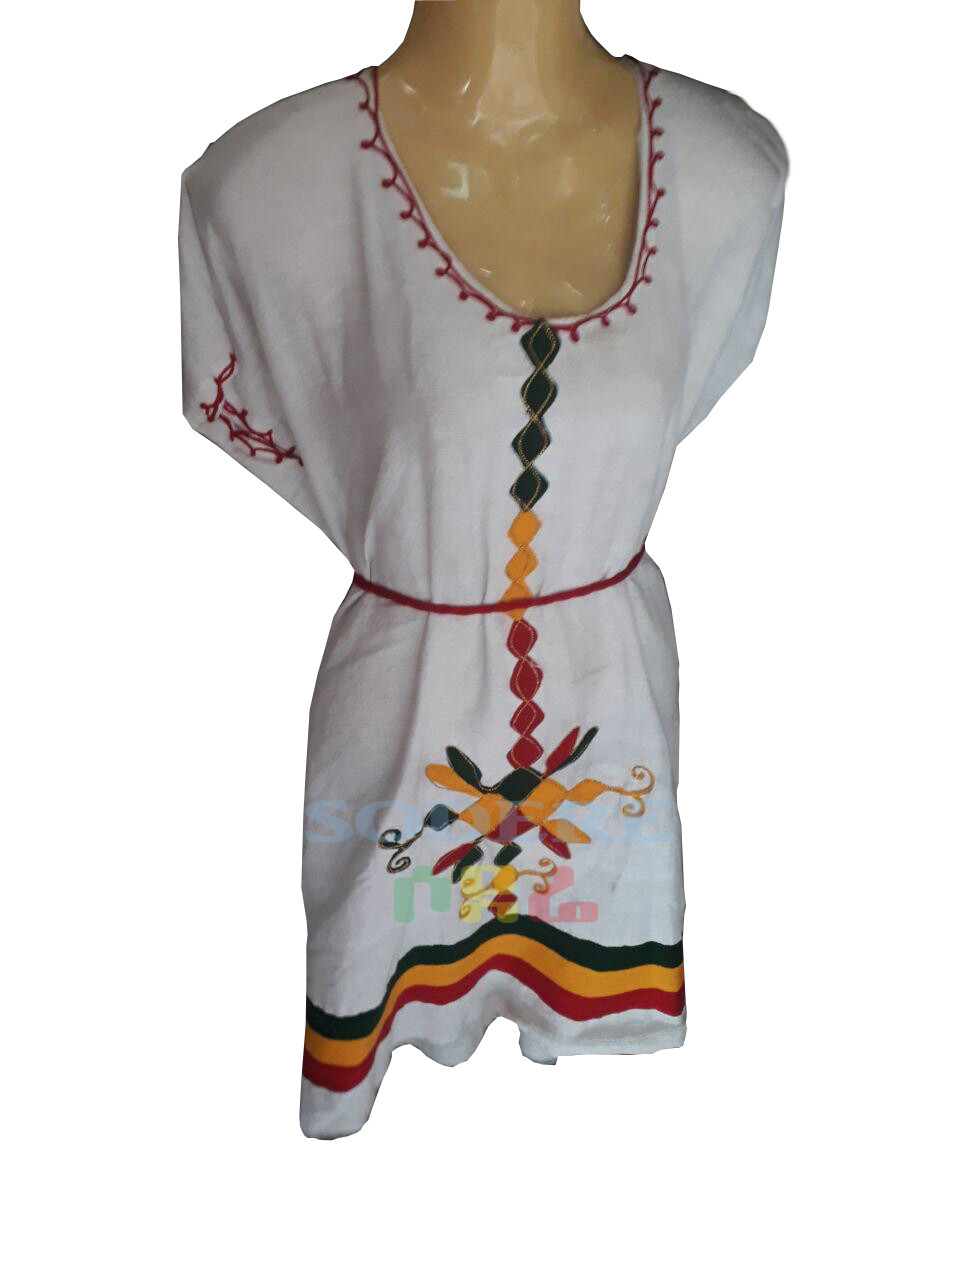 የኢትዮጲያ ባንዲራ ያለው የሴቶች አጓጎጉል ቀሚስ Ethiopian Women Dress / free size